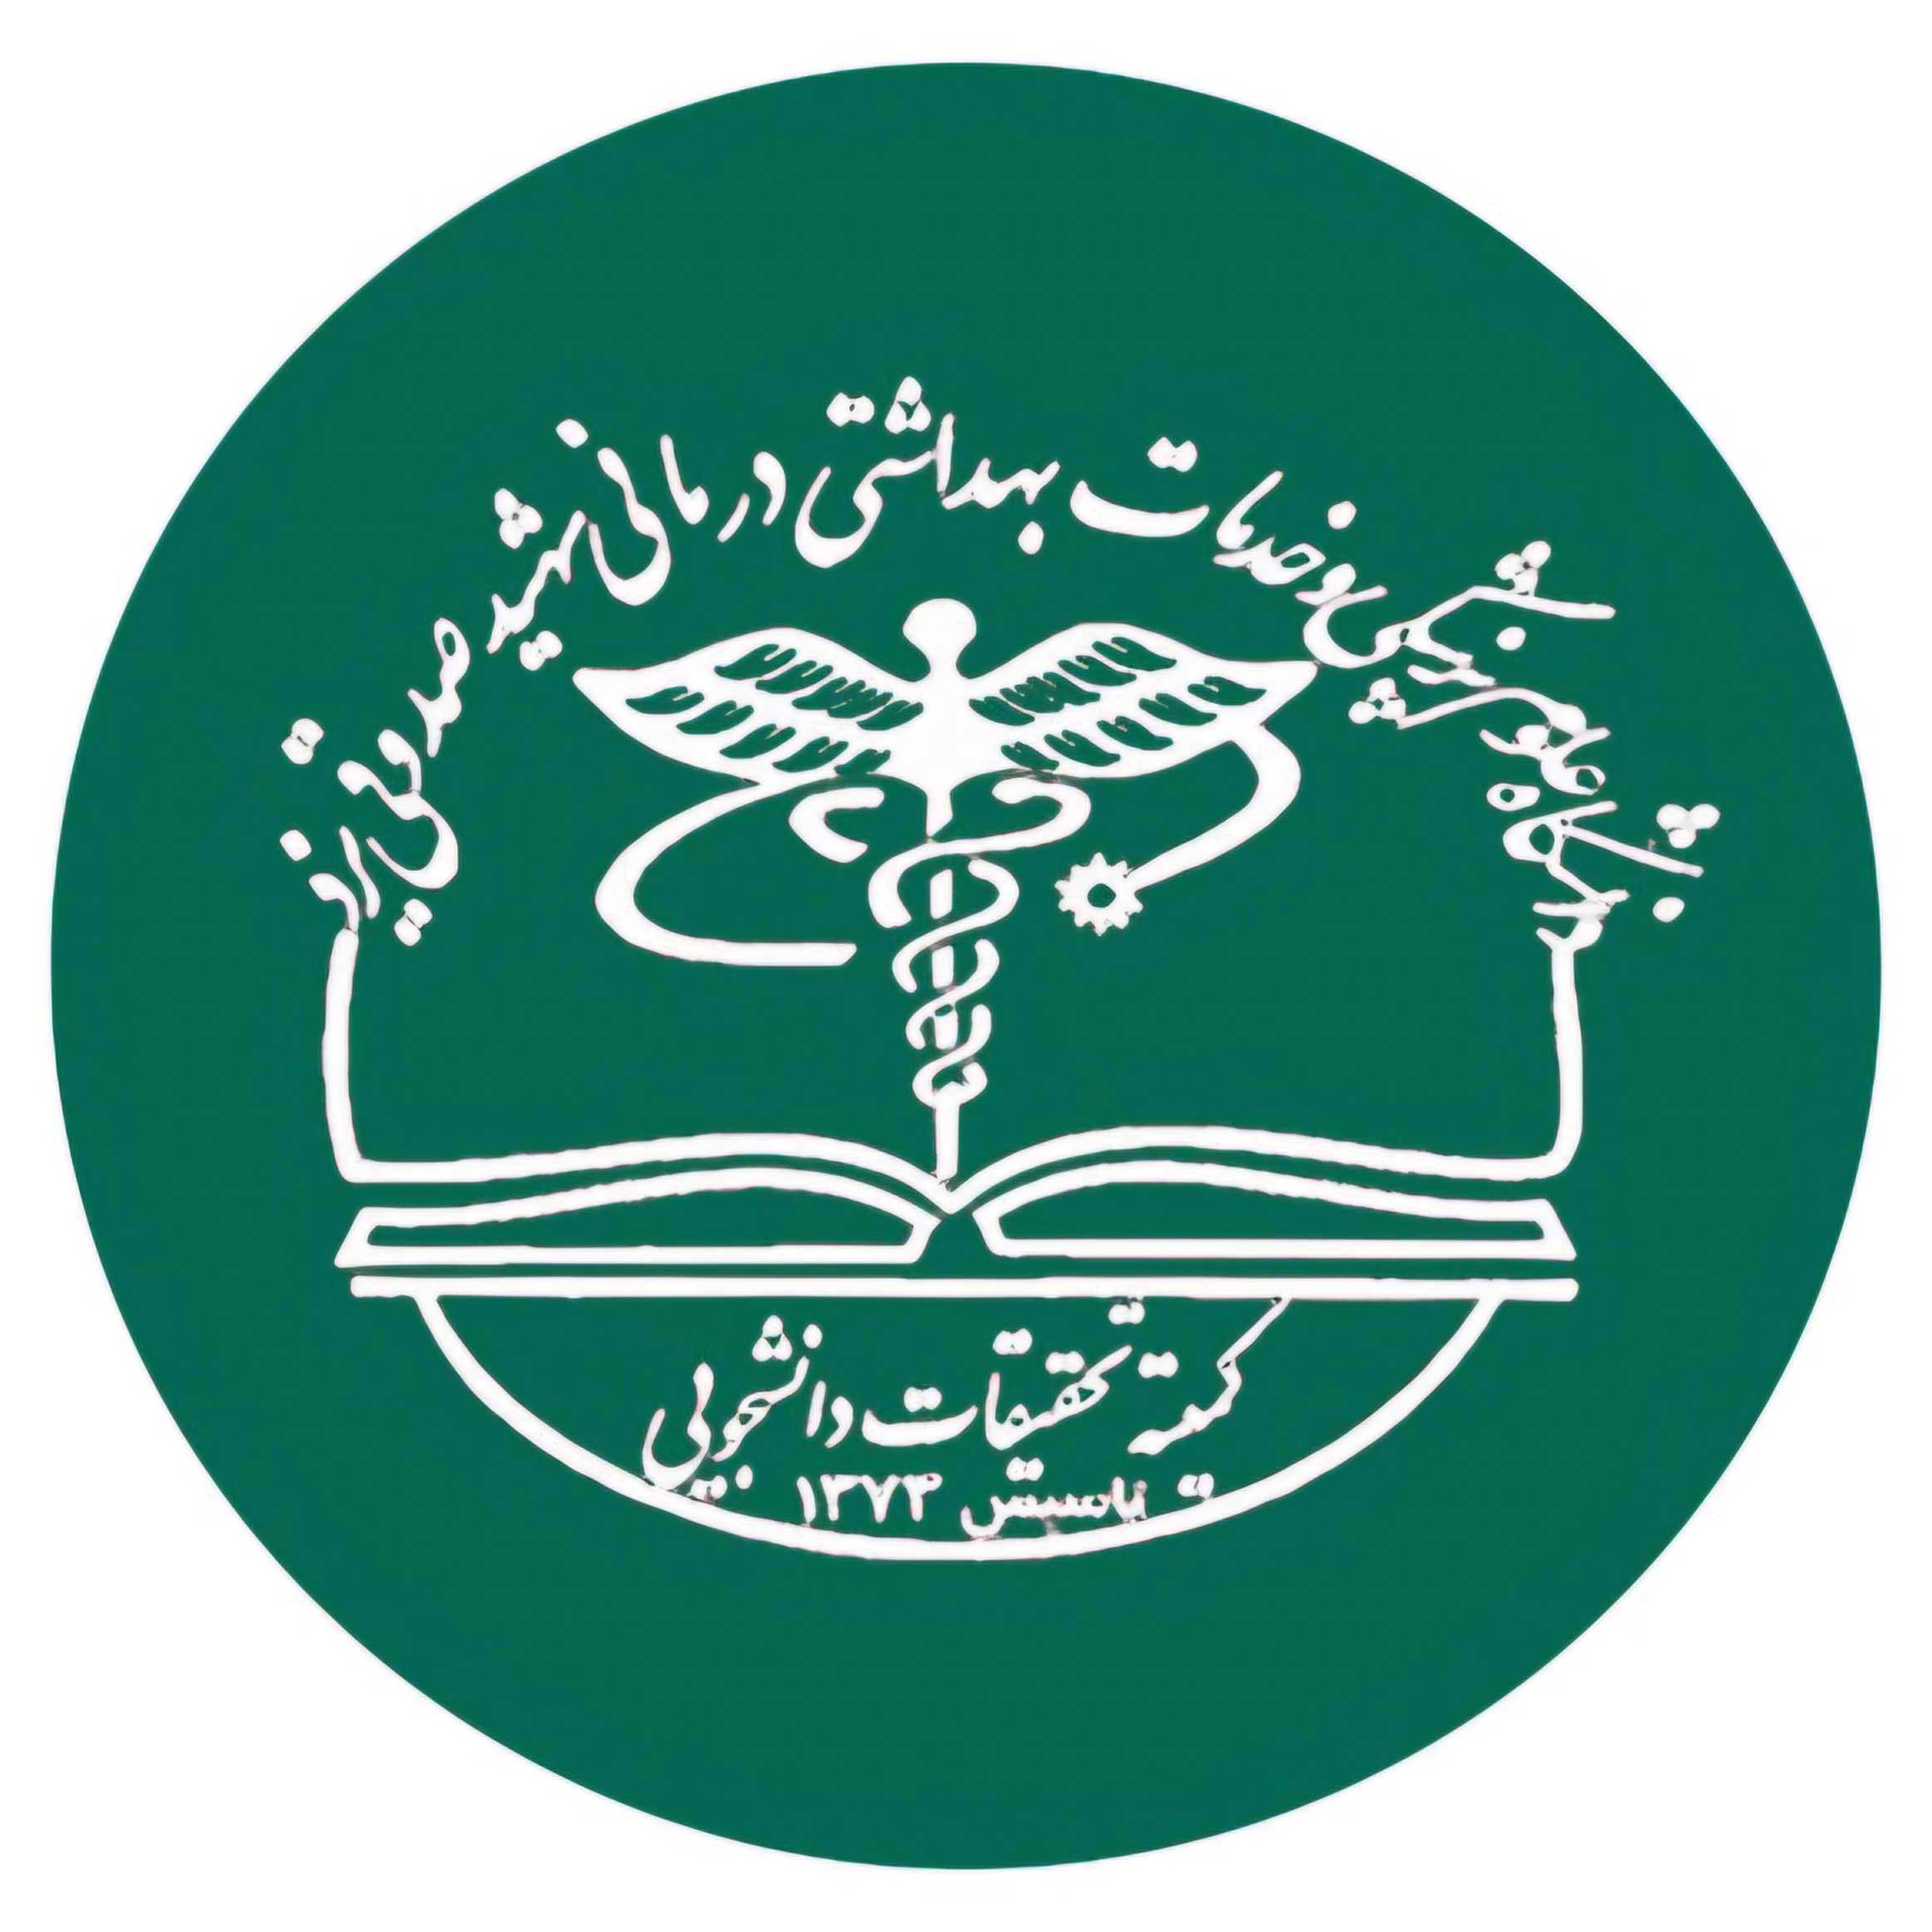 کمیته تحقیقات و فناوری دانشجویی دانشگاه علوم پزشکی یزد